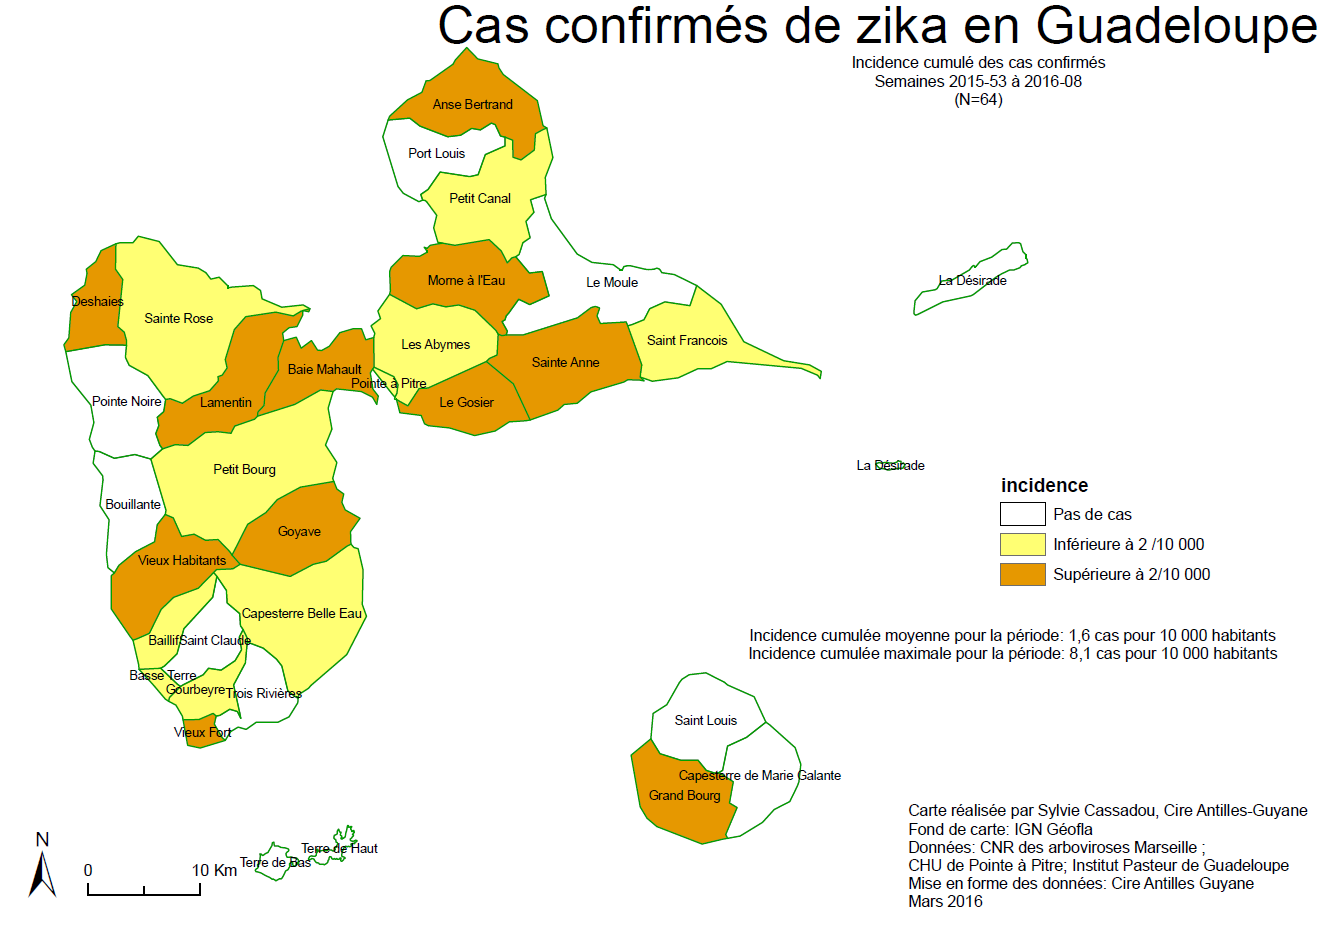 Situation épidémiologique actuelle en Guadeloupe Surveillance des cas confirmés Au 2 mars, au total, 66 cas de Zika biologiquement confirmés ont été signalés en Guadeloupe.